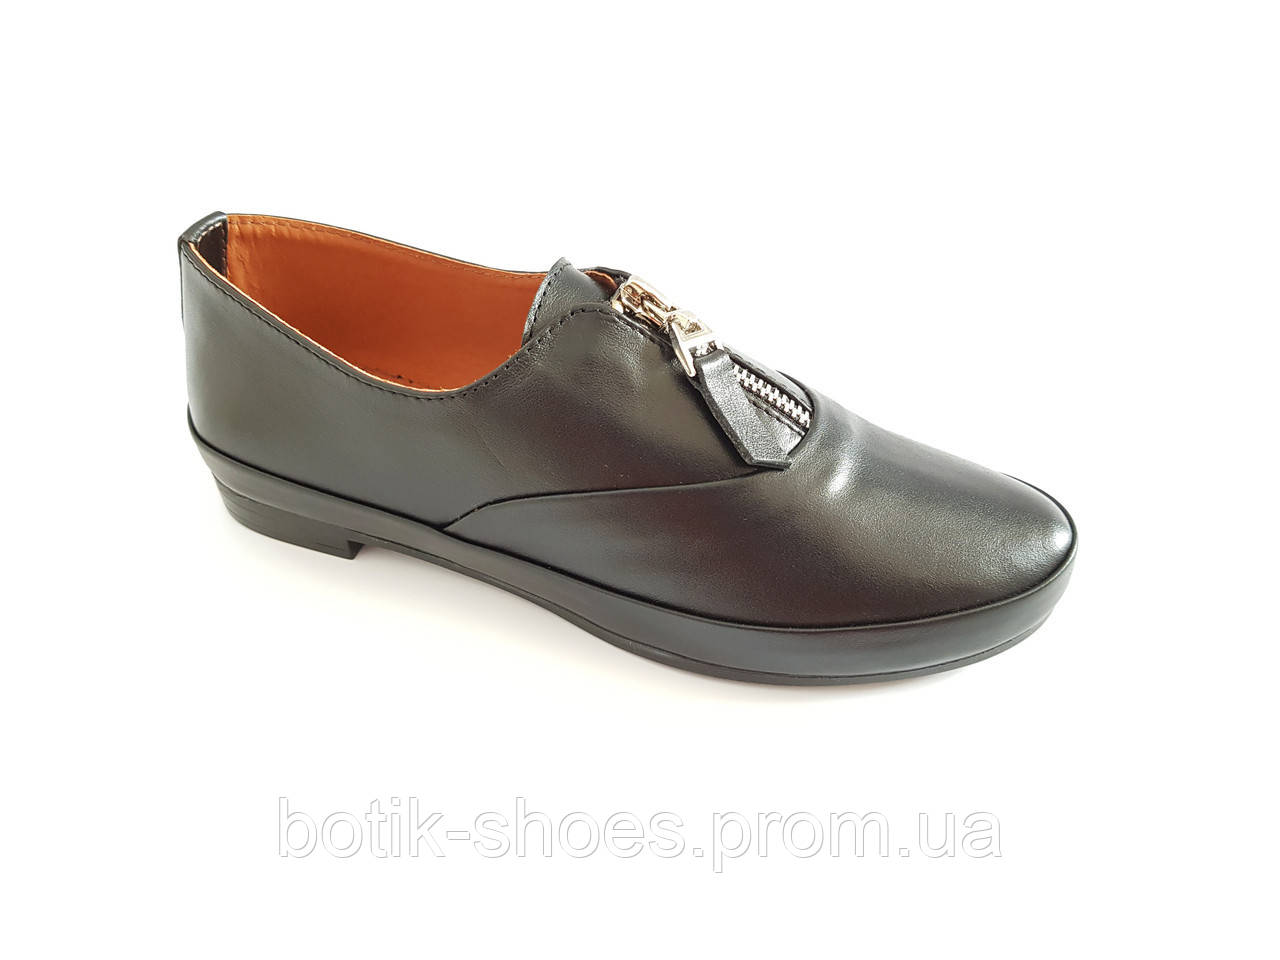 Шкіряні жіночі туфлі на низькому ходу модні молодіжні комфорт якісні легкі стильні красиві зручні чорні 37 розмір Prellesta 347